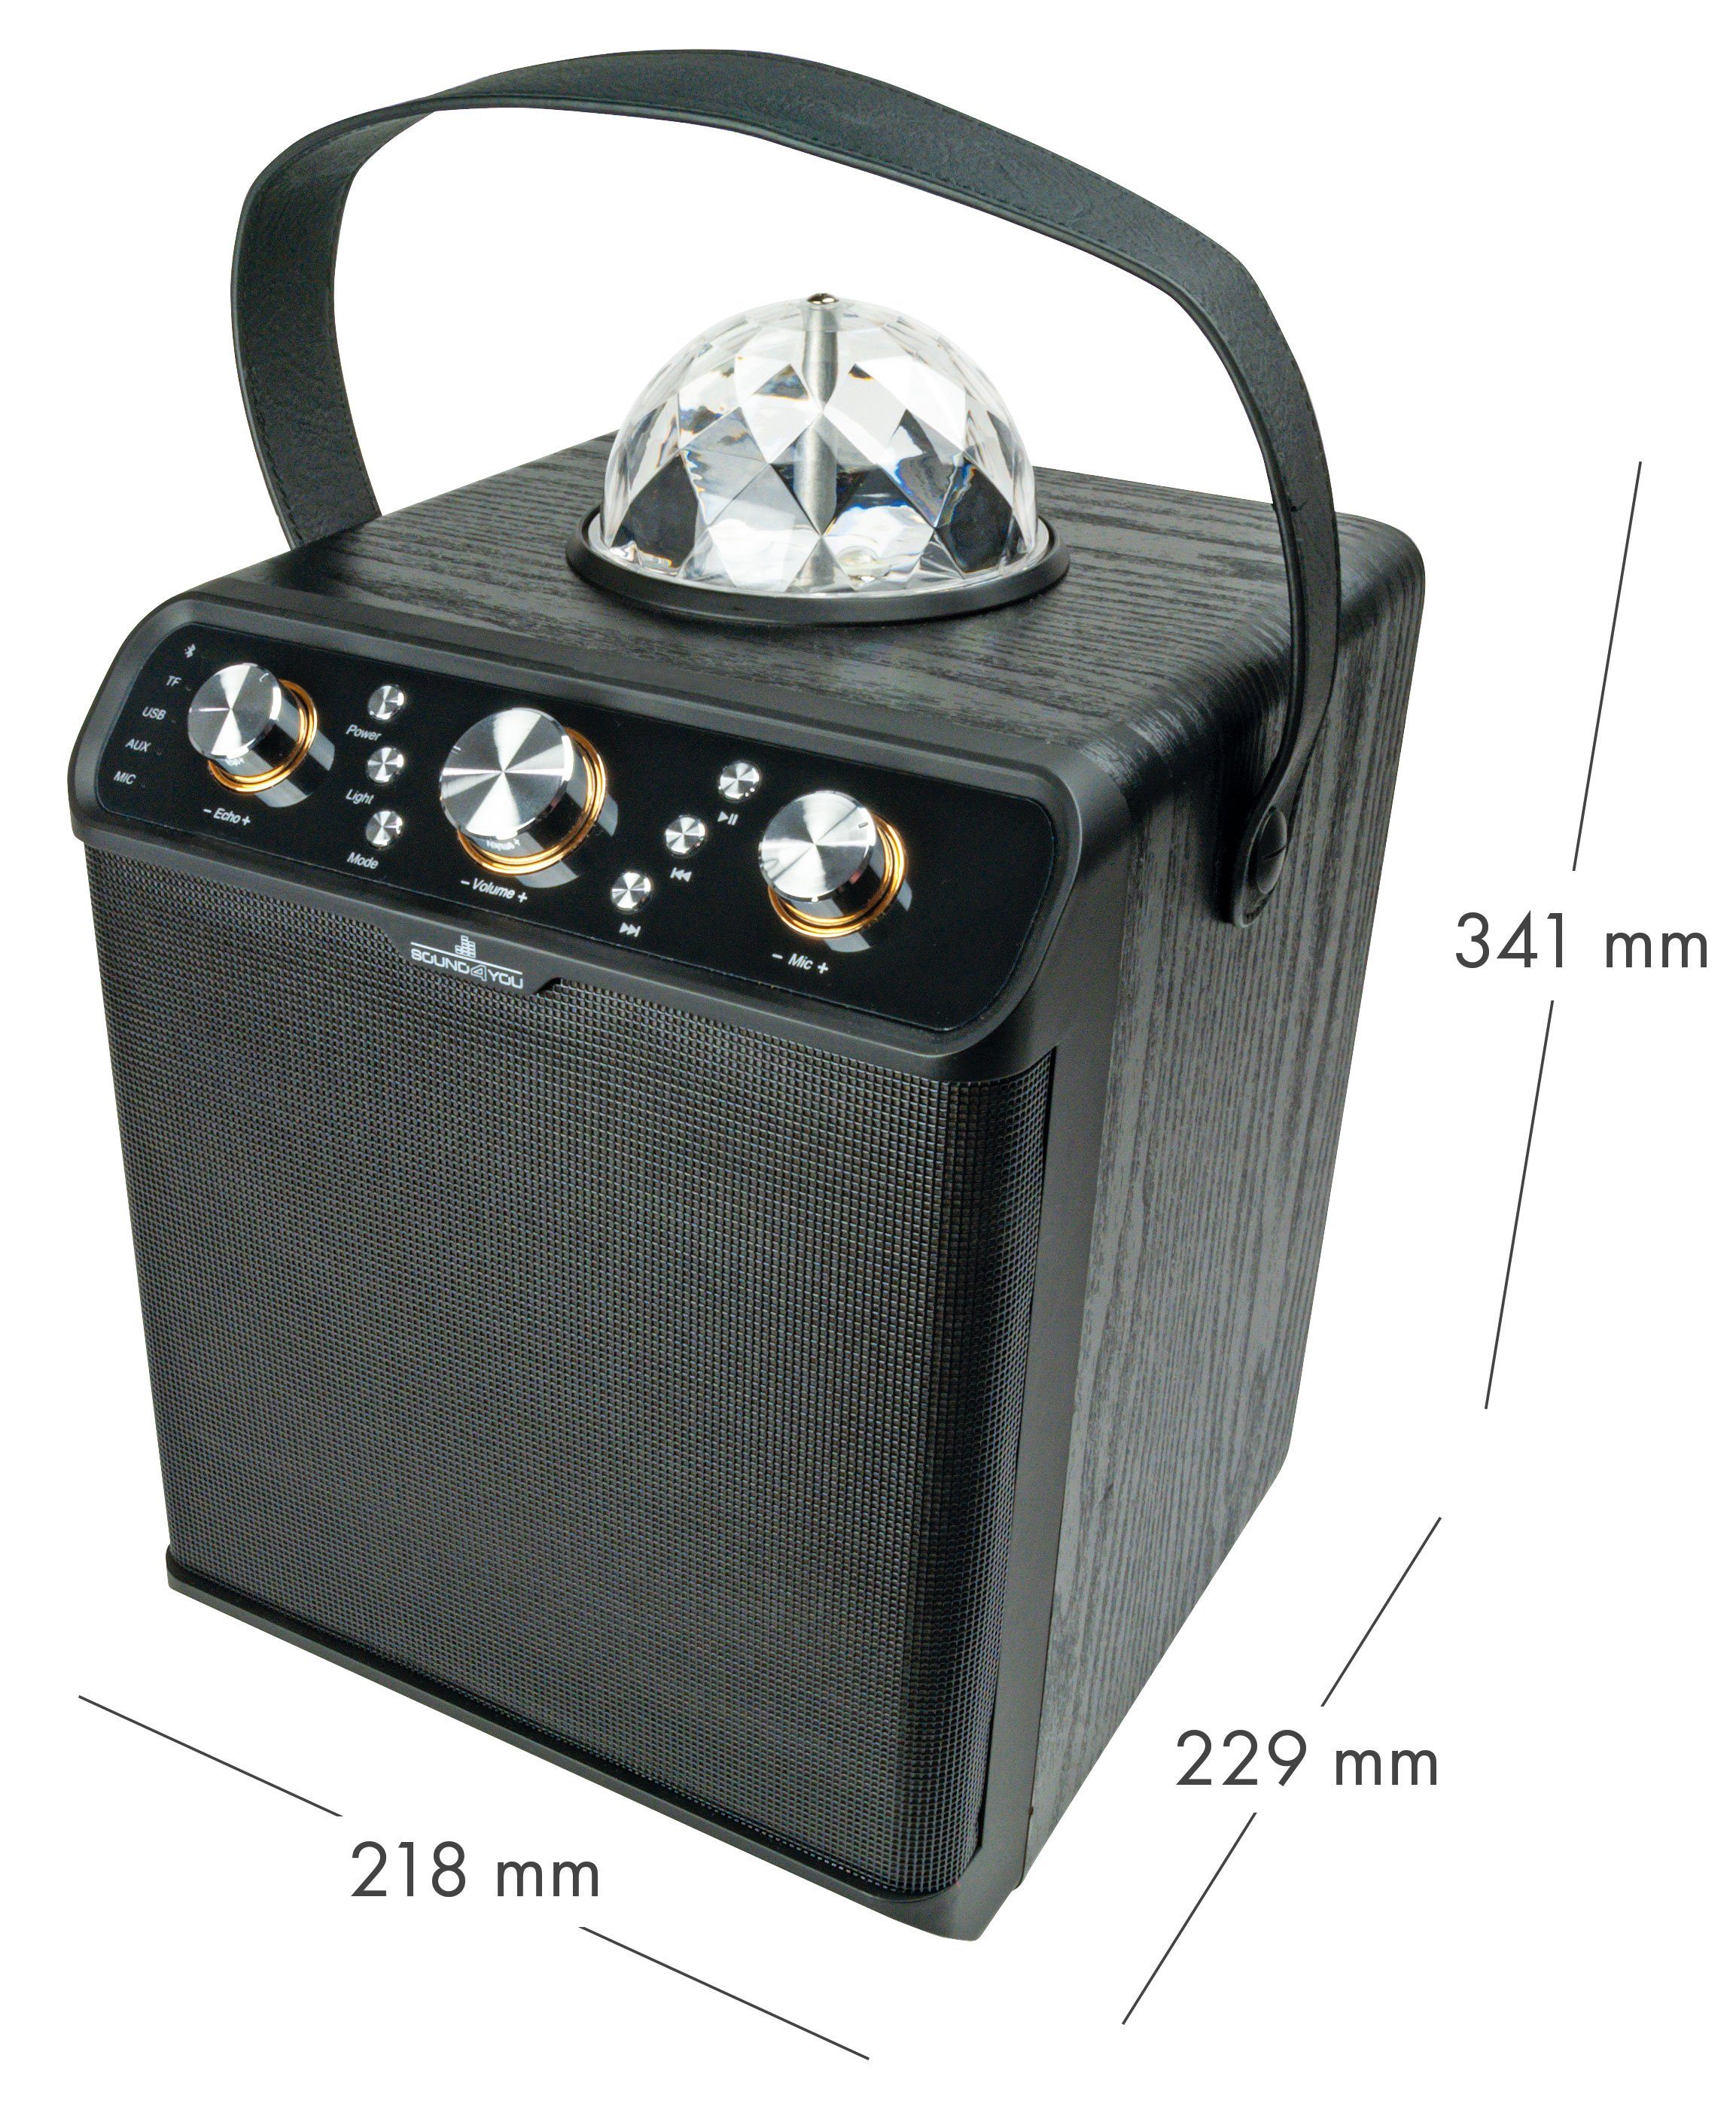 Schwaiger 661675 Party-Lautsprecher (Bluetooth, Discokugel) W, mit 300